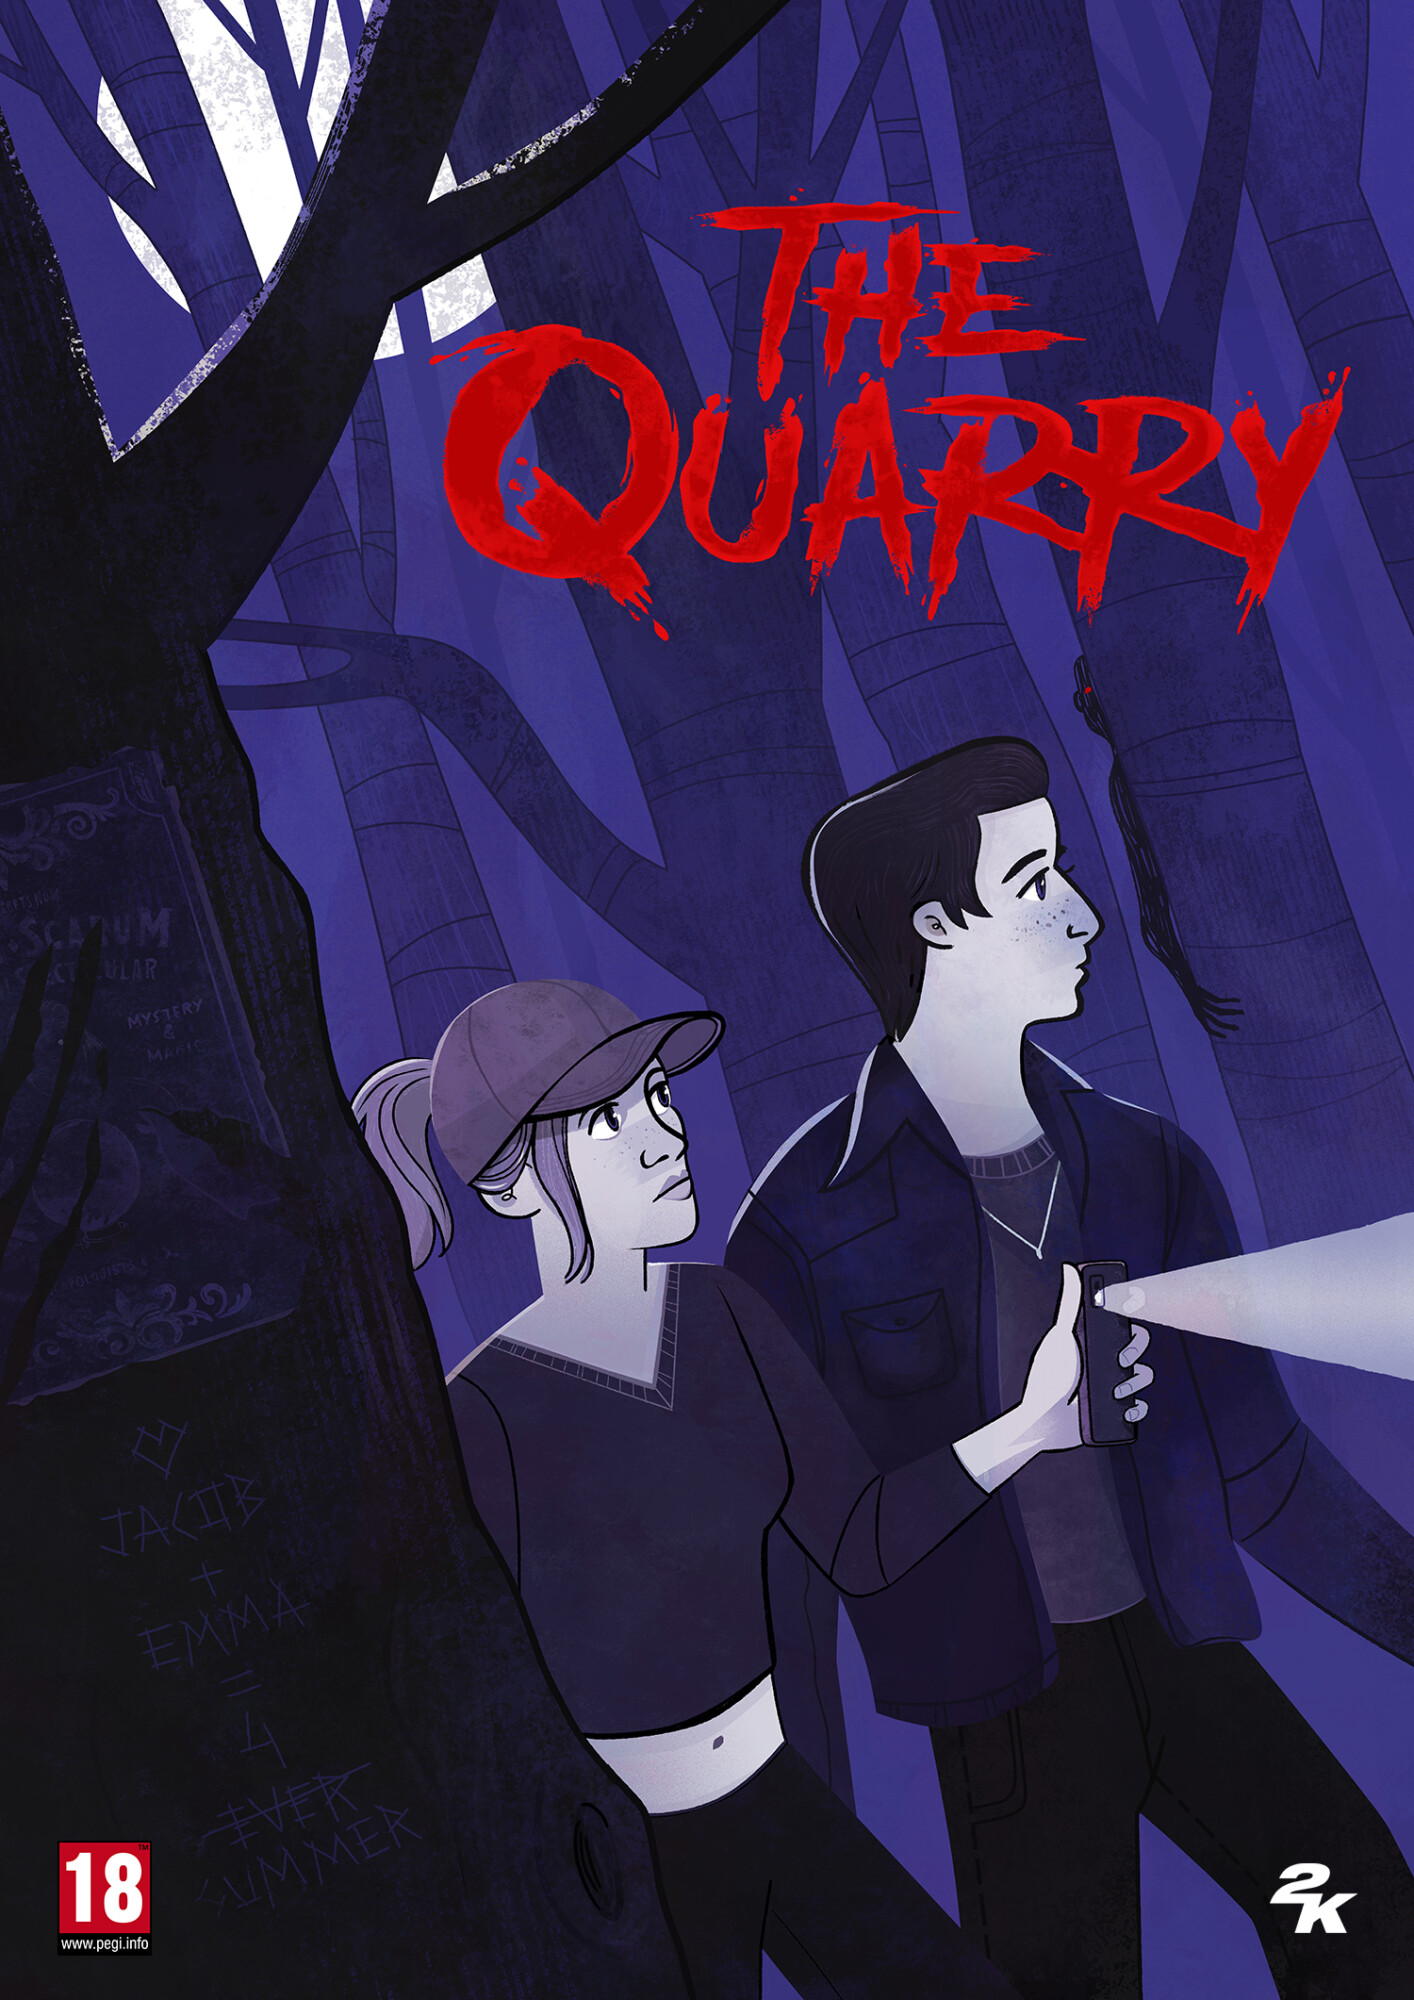 Maria Ku: Re-imagining The Quarry